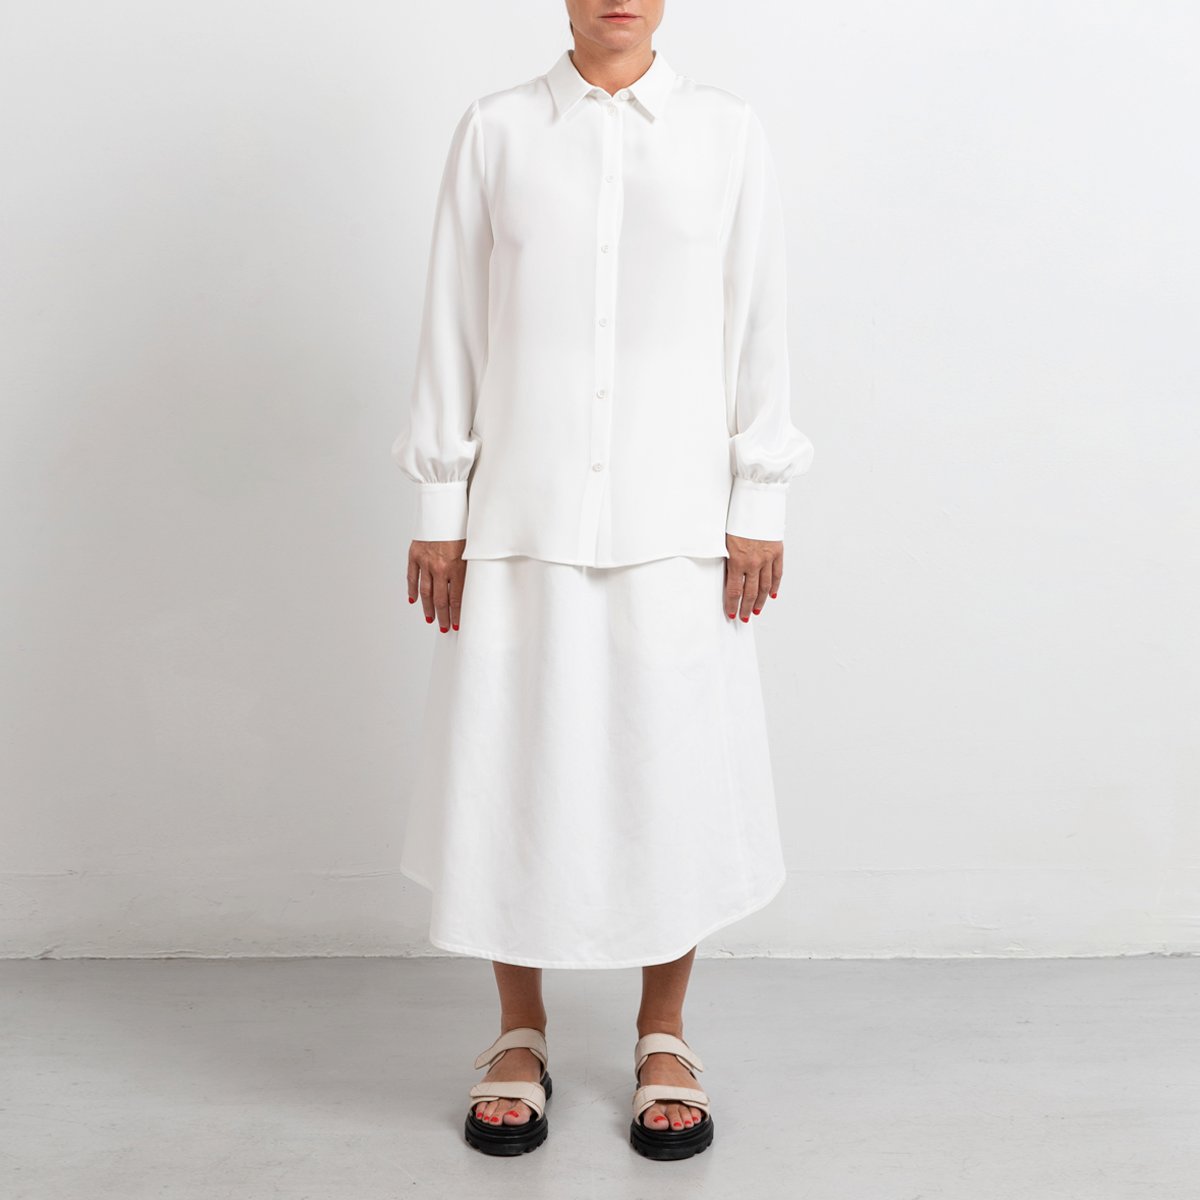 A-line white skirt